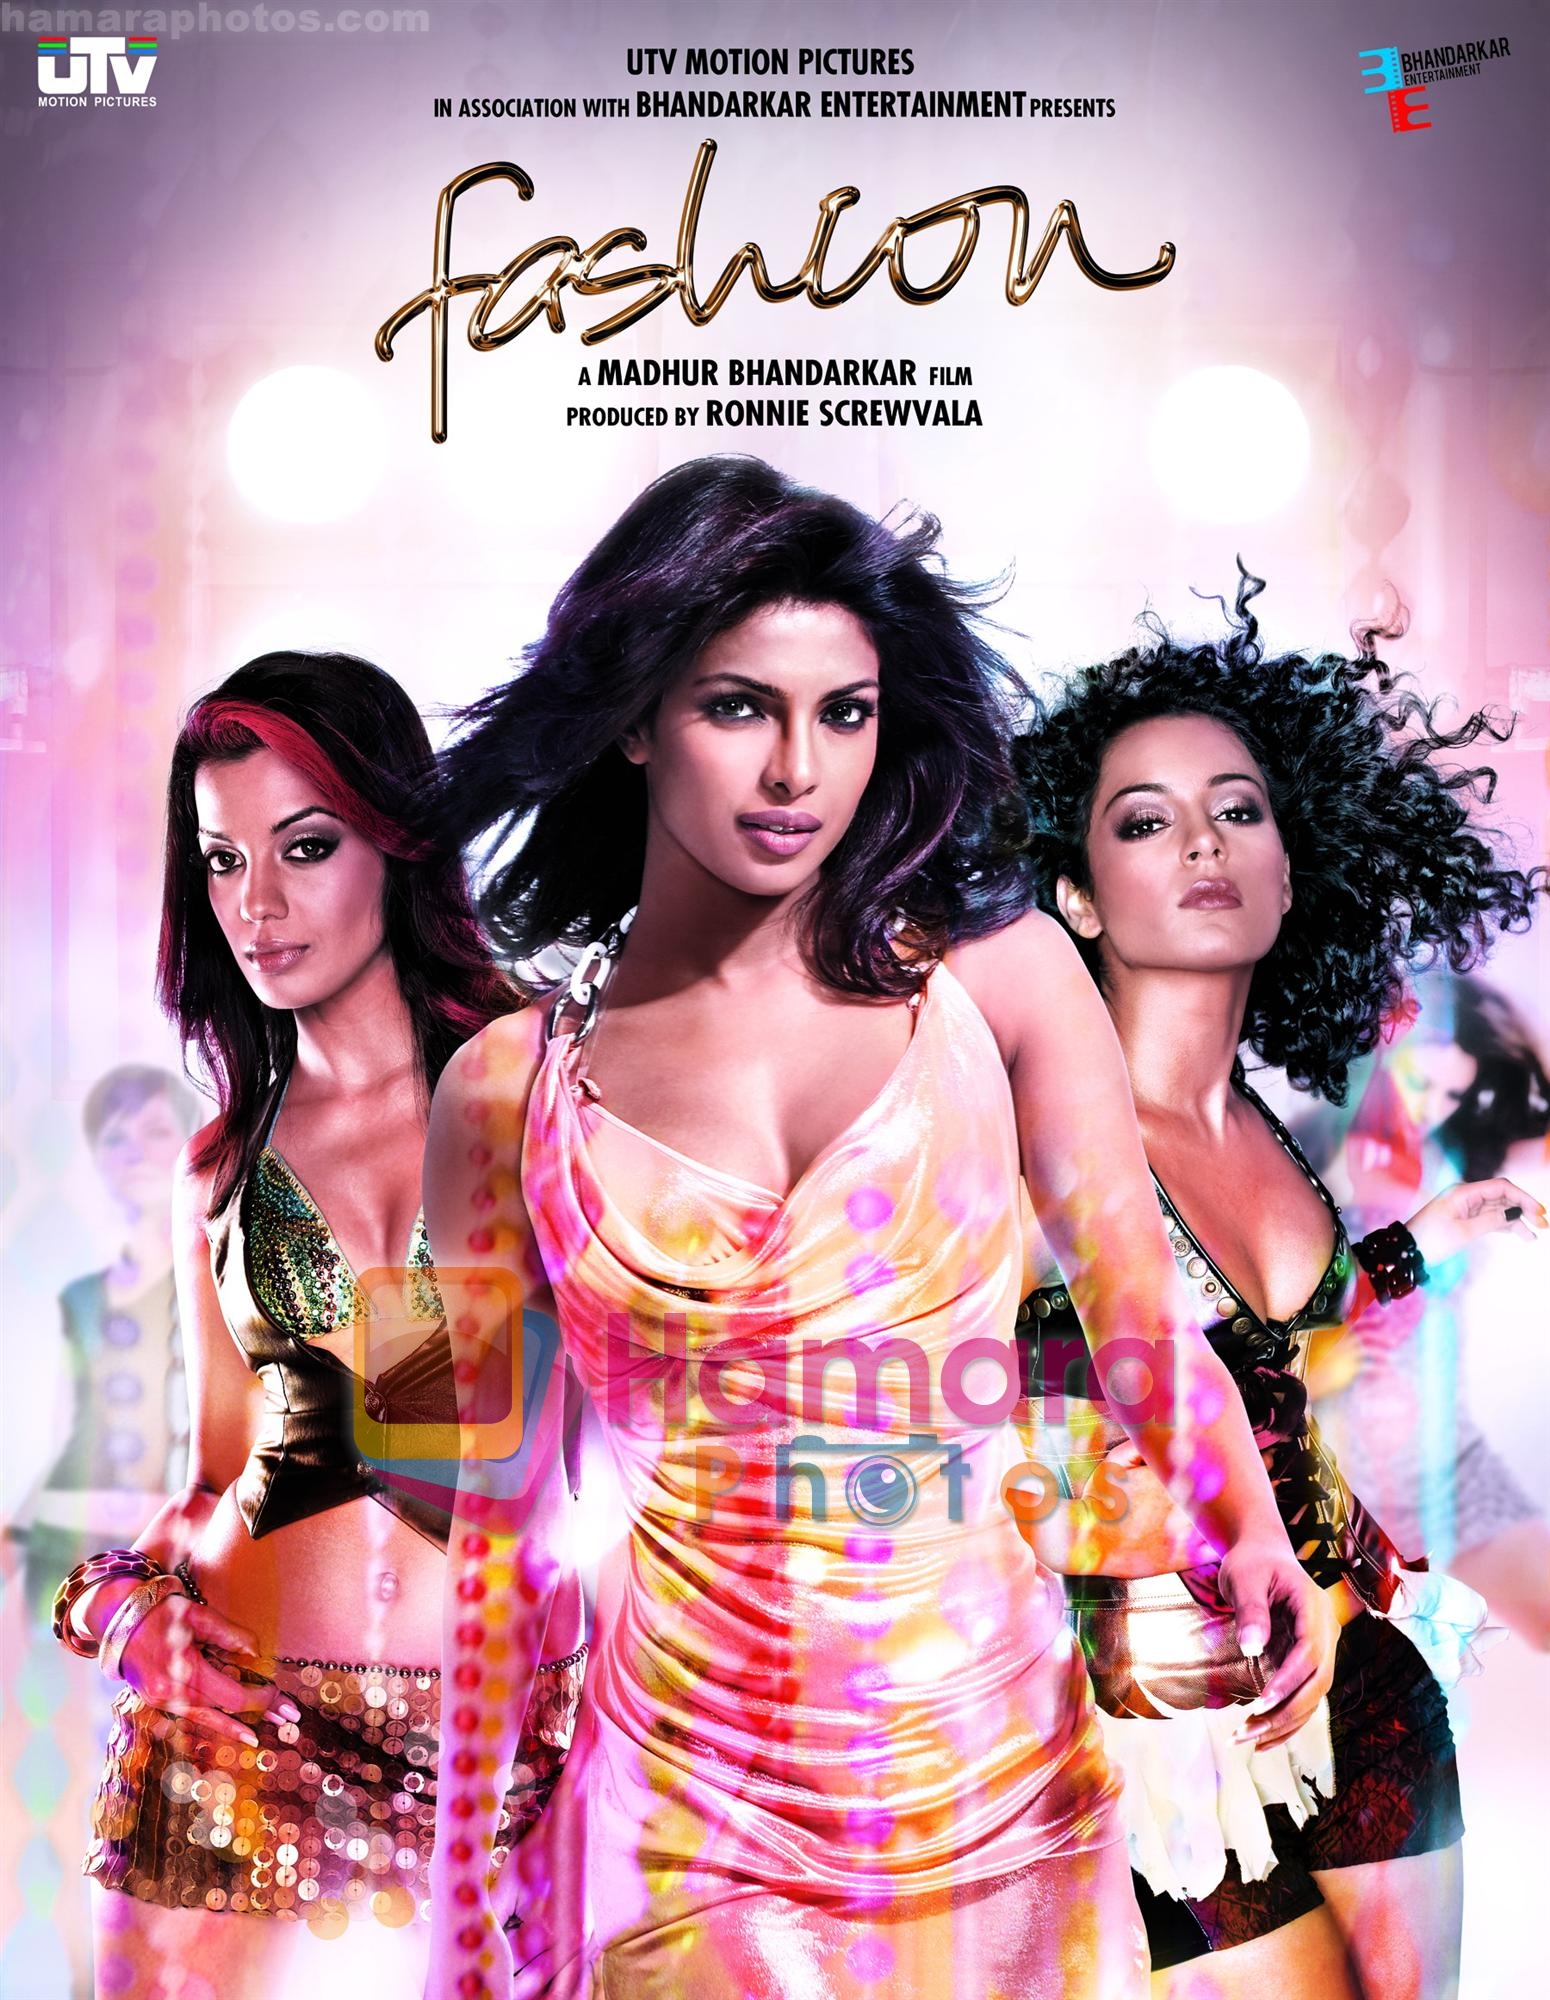 Fashion Movie Stills on 30th October 2008 